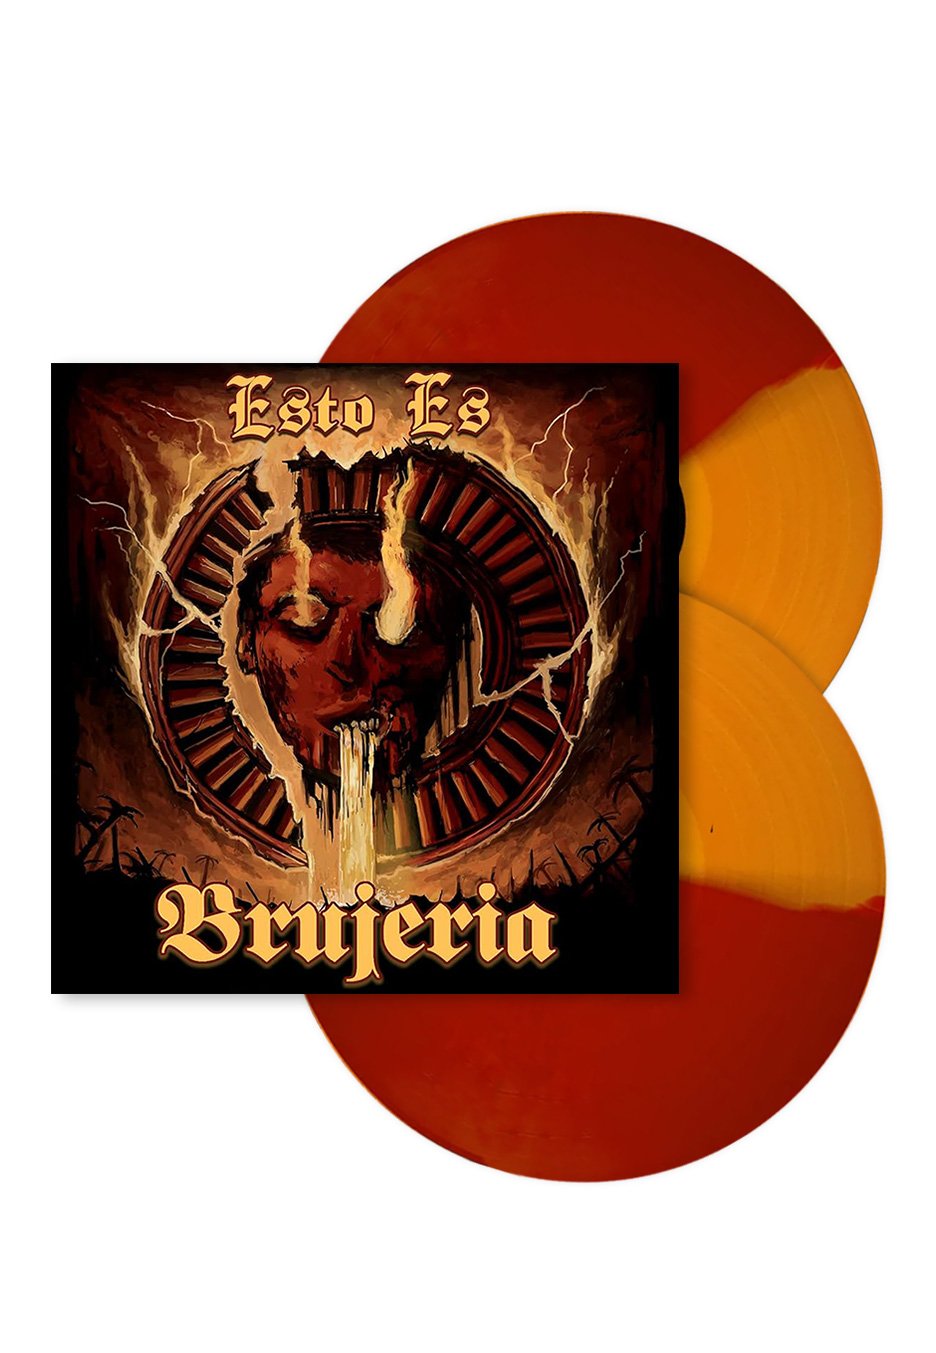 Brujeria - Esto Es Brujeria Ltd. Orange/Red Split - Colored 2 Vinyl